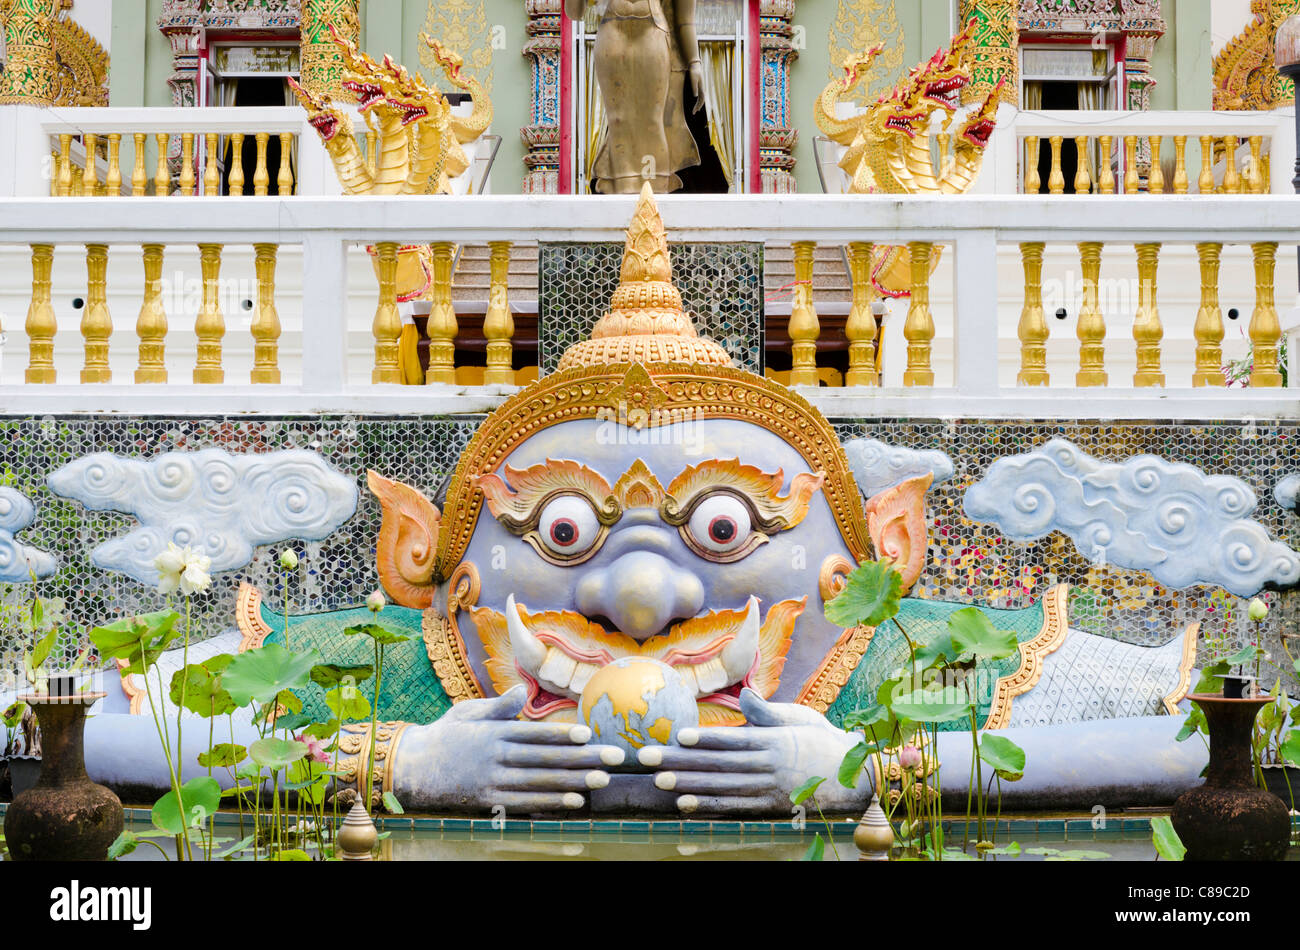 Große bunte Statue der buddhistischen Gottheit Kala mit weit aufgerissenen Augen vor Tempel im Norden Thailands Stockfoto